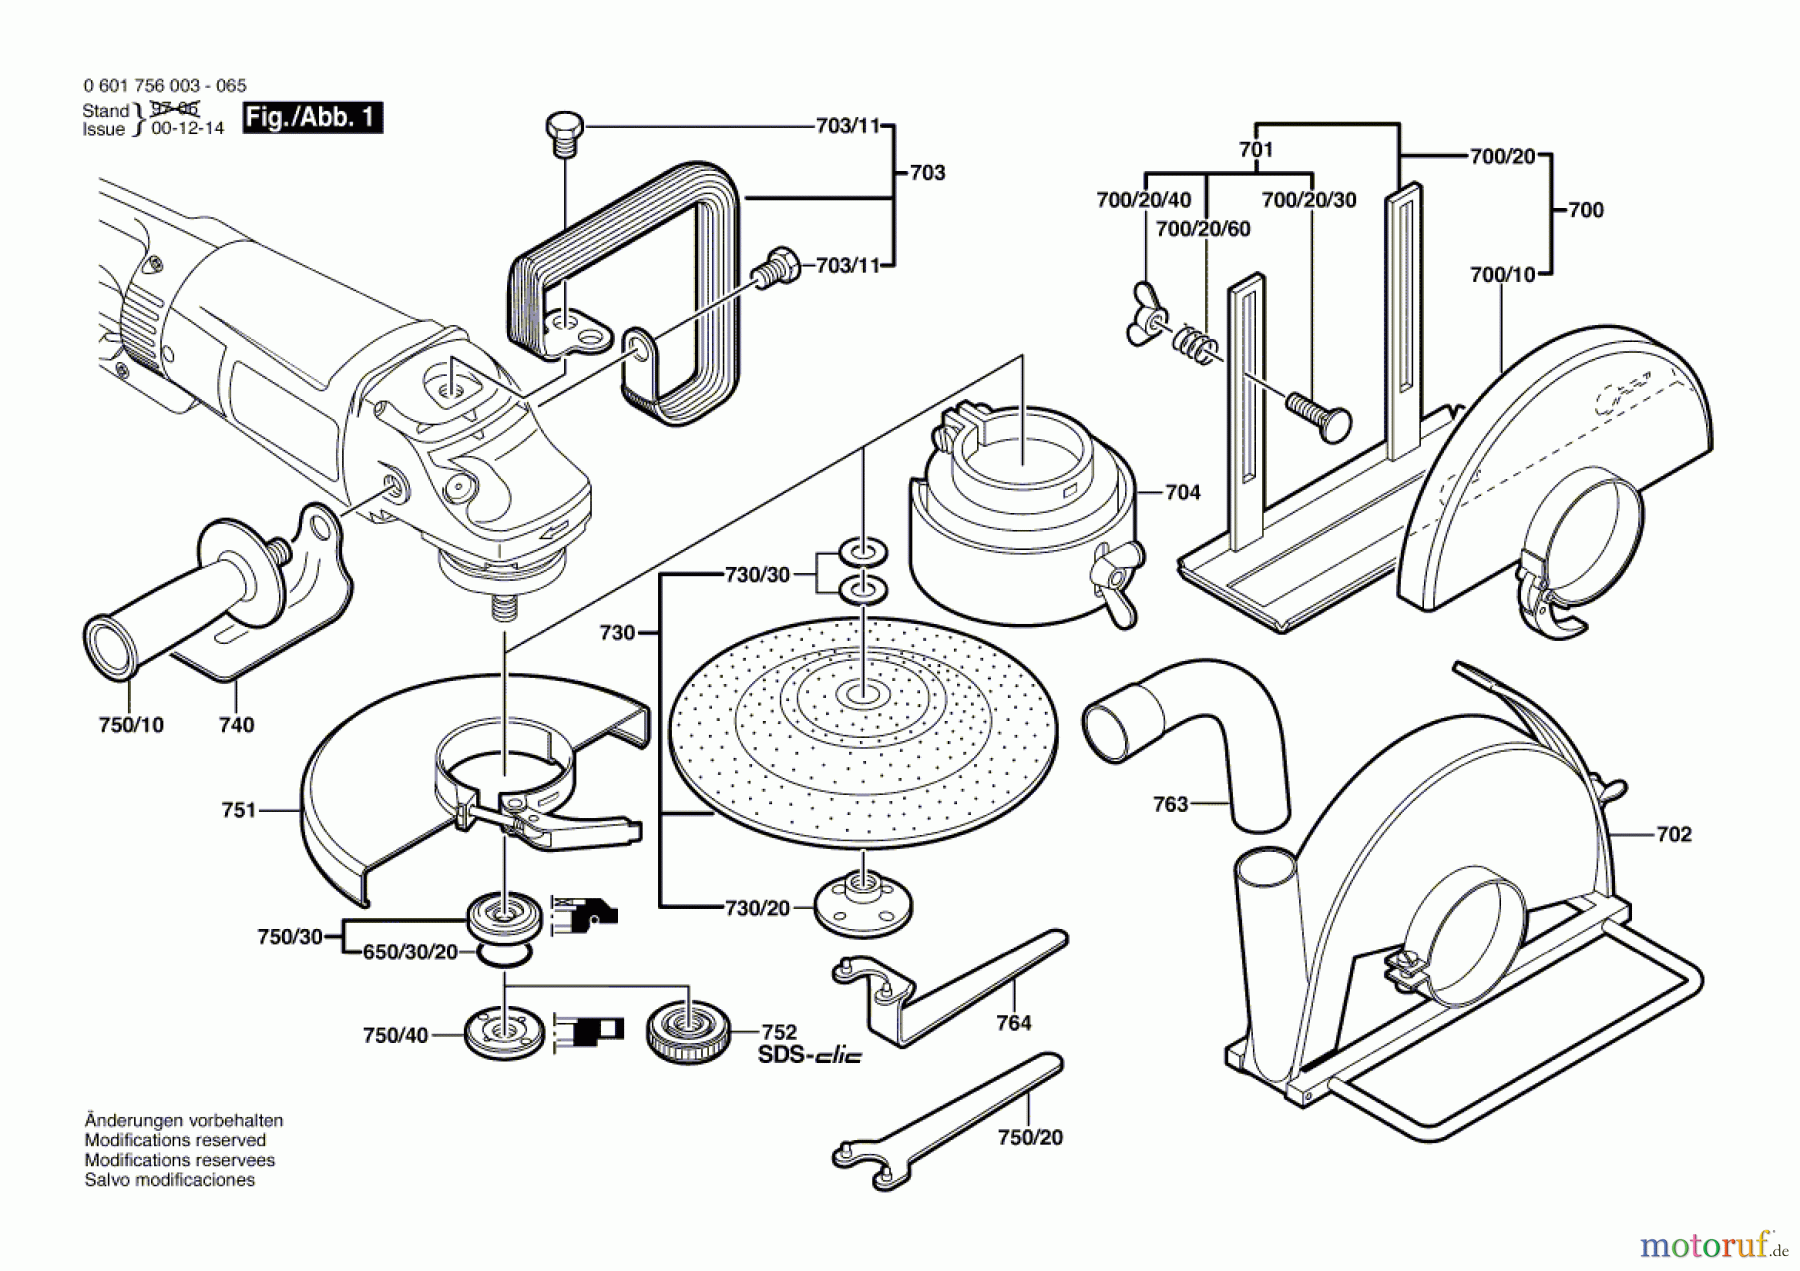  Bosch Werkzeug Winkelschleifer GWS 25-230 Seite 2